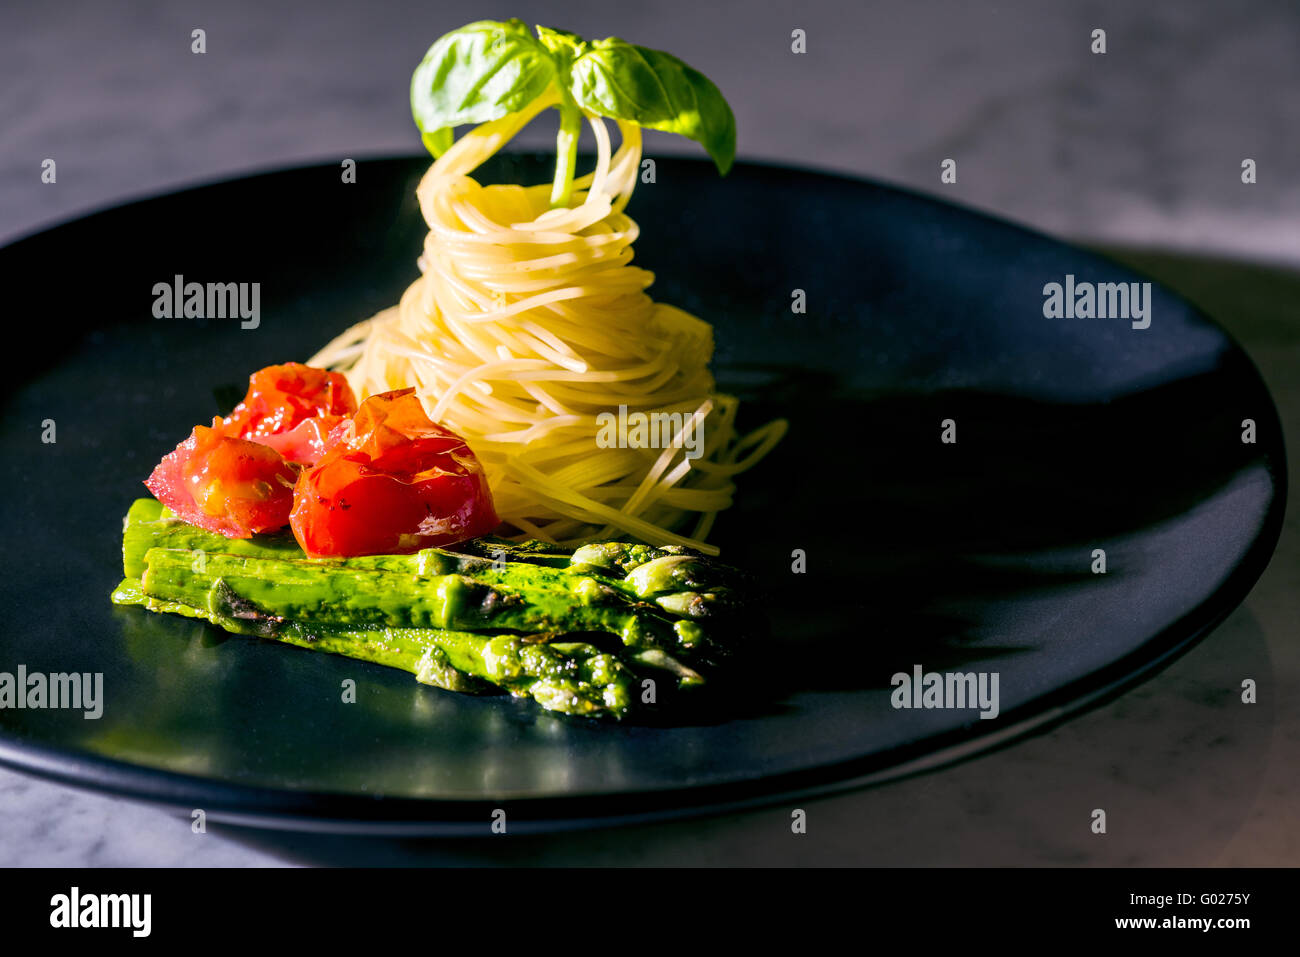 Pasta tagliatelle spaghetti pomodoro asparagi basilico sulla piastra nera verde nero rosso del buon cibo italiano italia elegante moderno veloce kitch Foto Stock